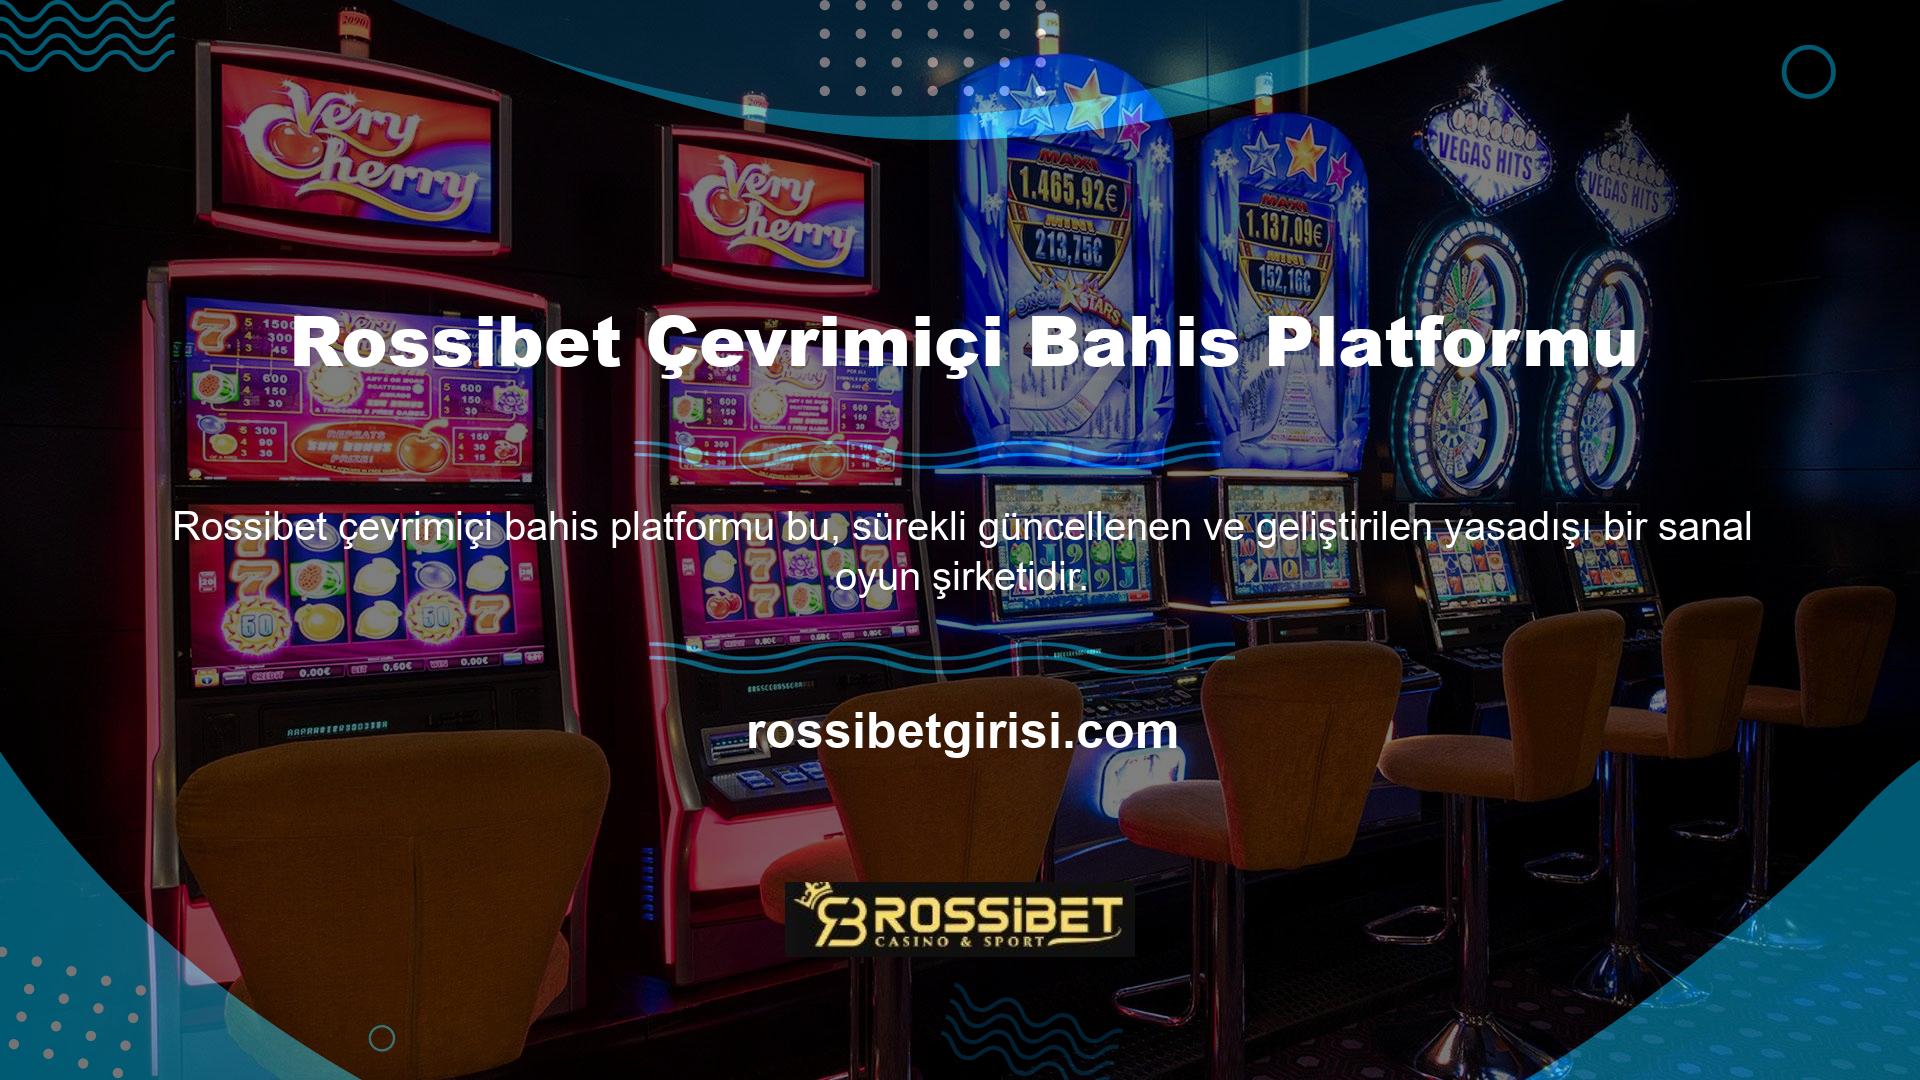 Rossibet, siteye eklenen yeni oyunlar, düzenli olarak değişen bonus ve promosyonlar ve en son gelişmeler hakkında üyeleri bilgilendirmek için sıklıkla haber teknolojilerini kullanır